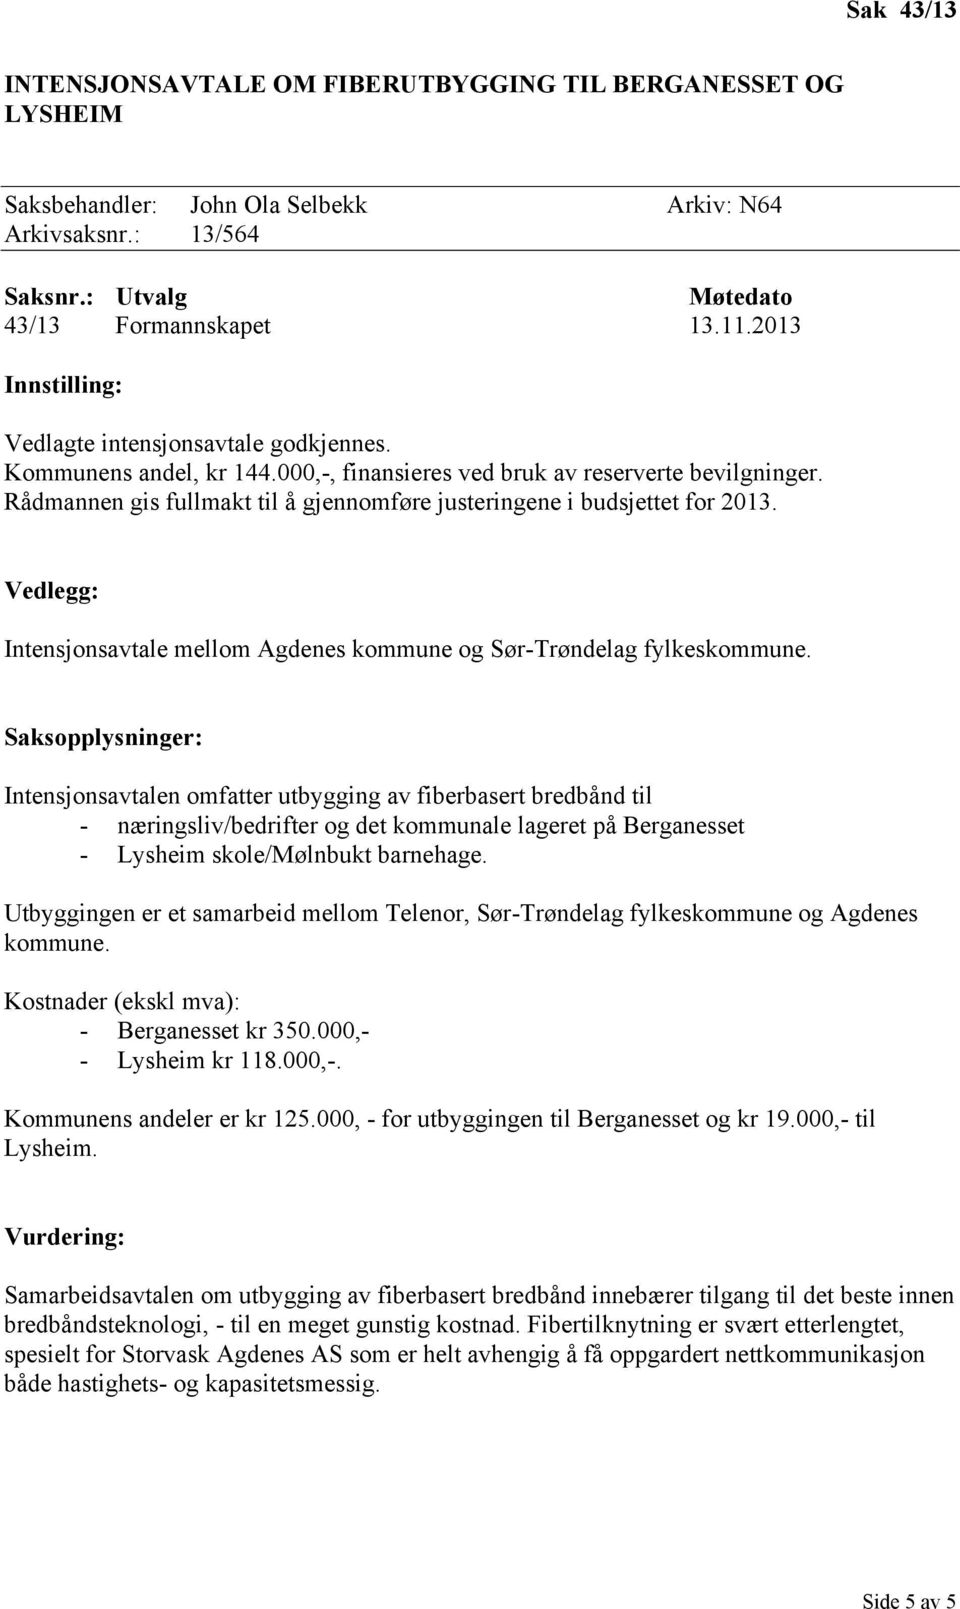 Vedlegg: Intensjonsavtale mellom Agdenes kommune og Sør-Trøndelag fylkeskommune.